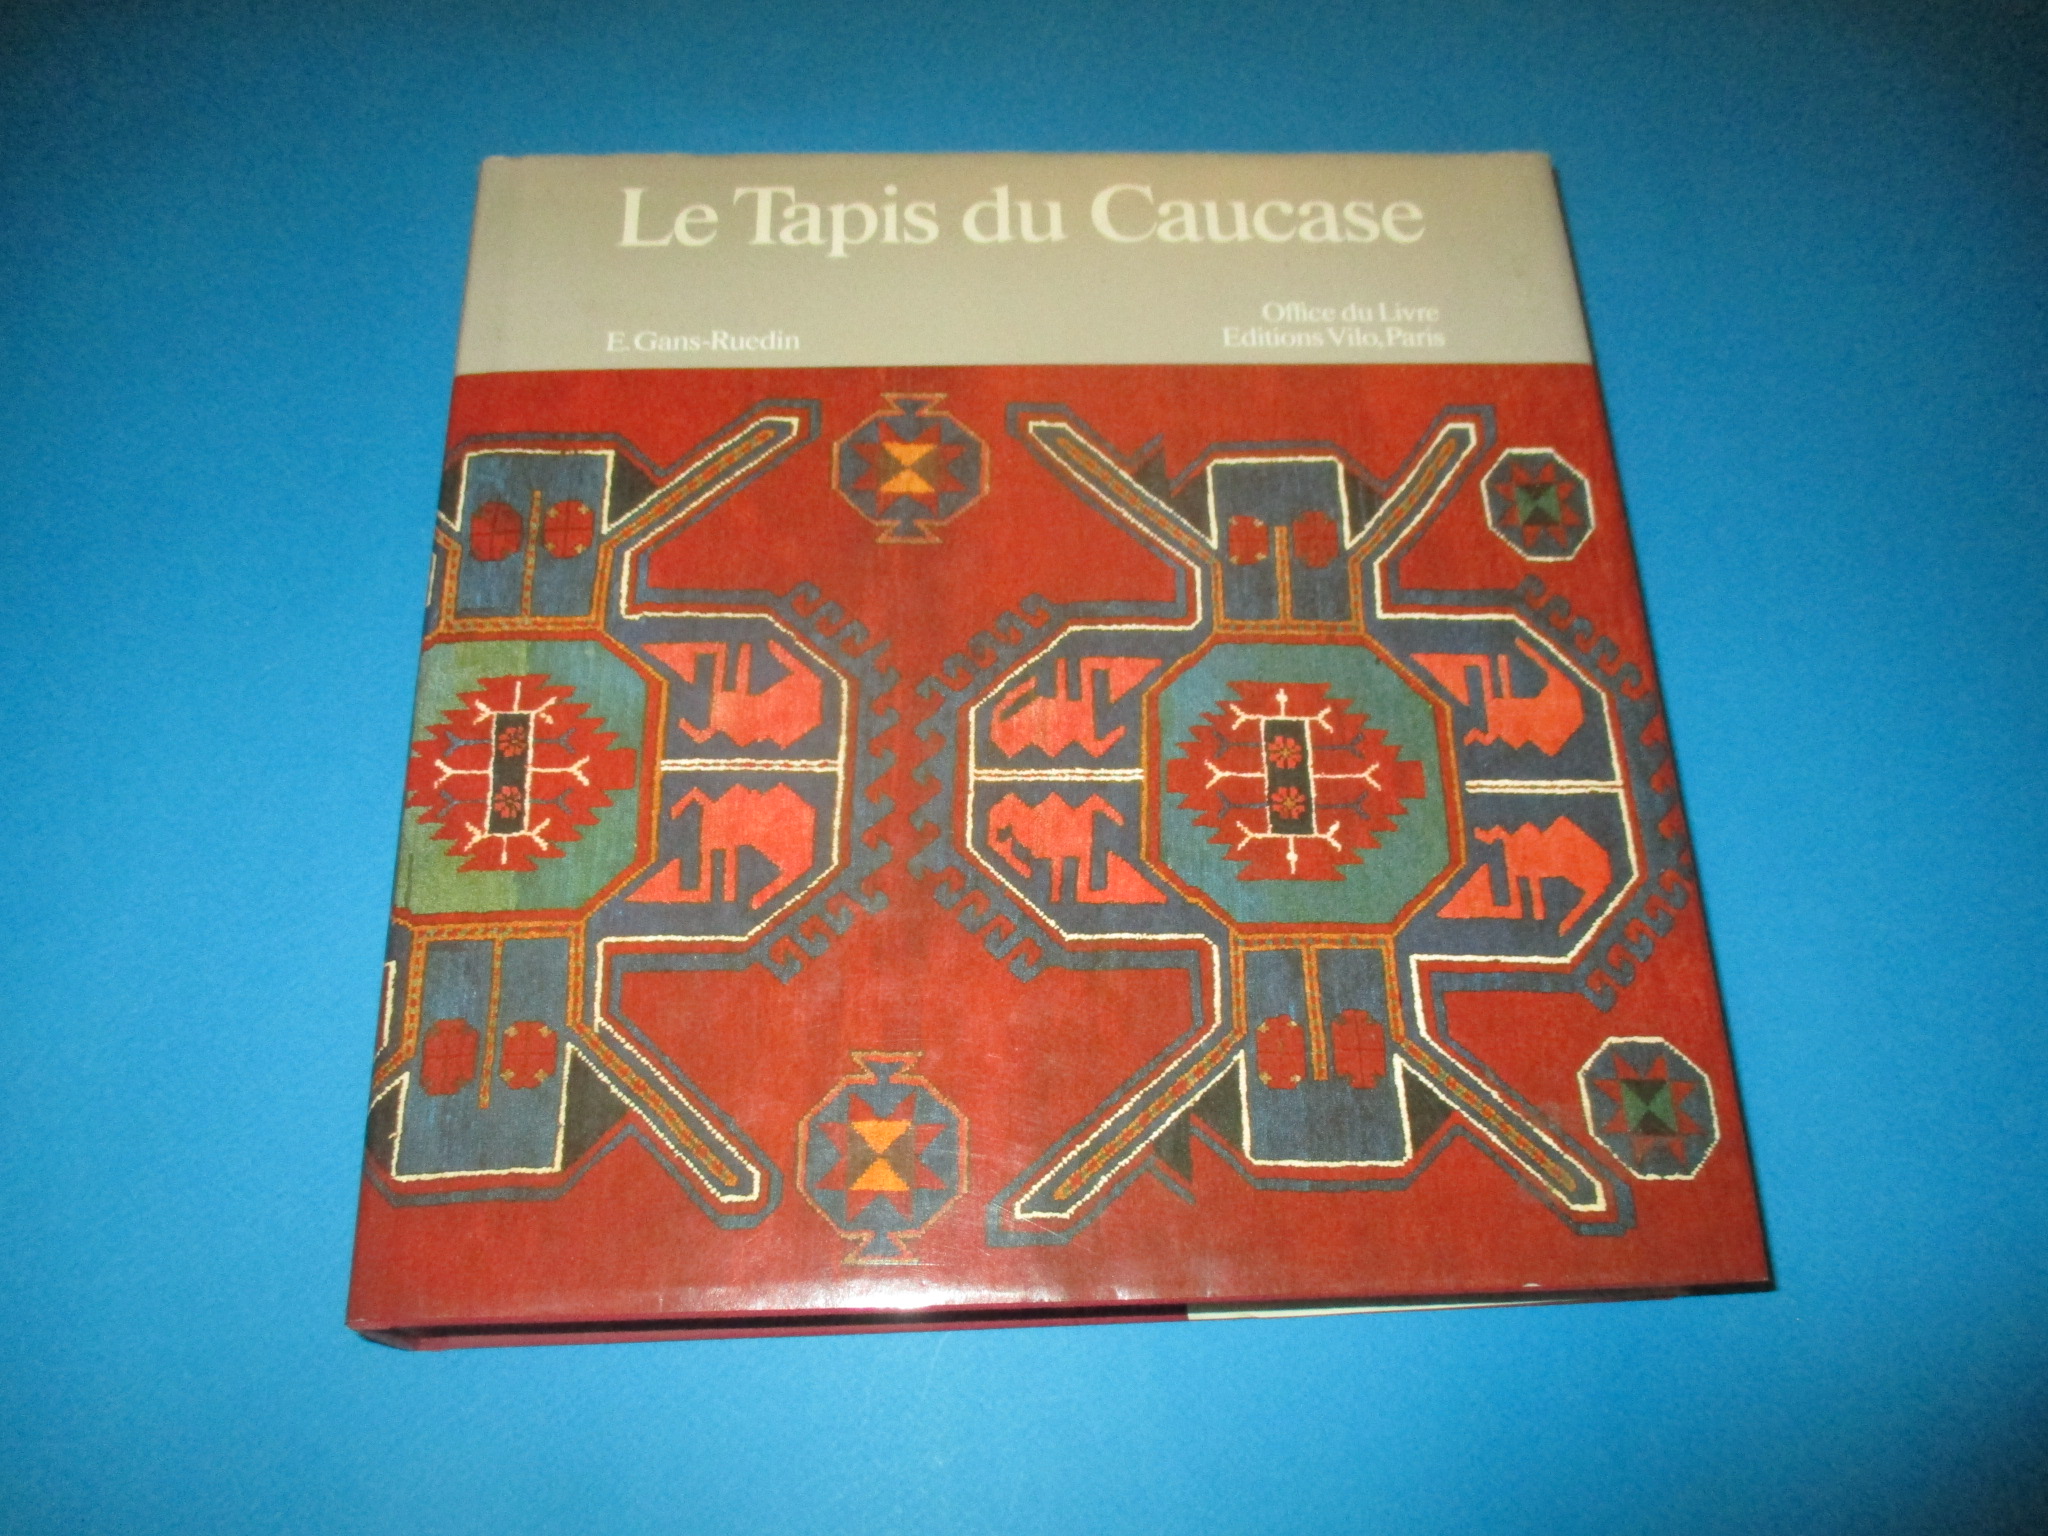 Le Tapis du Caucase, E. Gans-Ruedin, Office du Livre Editions Vilo